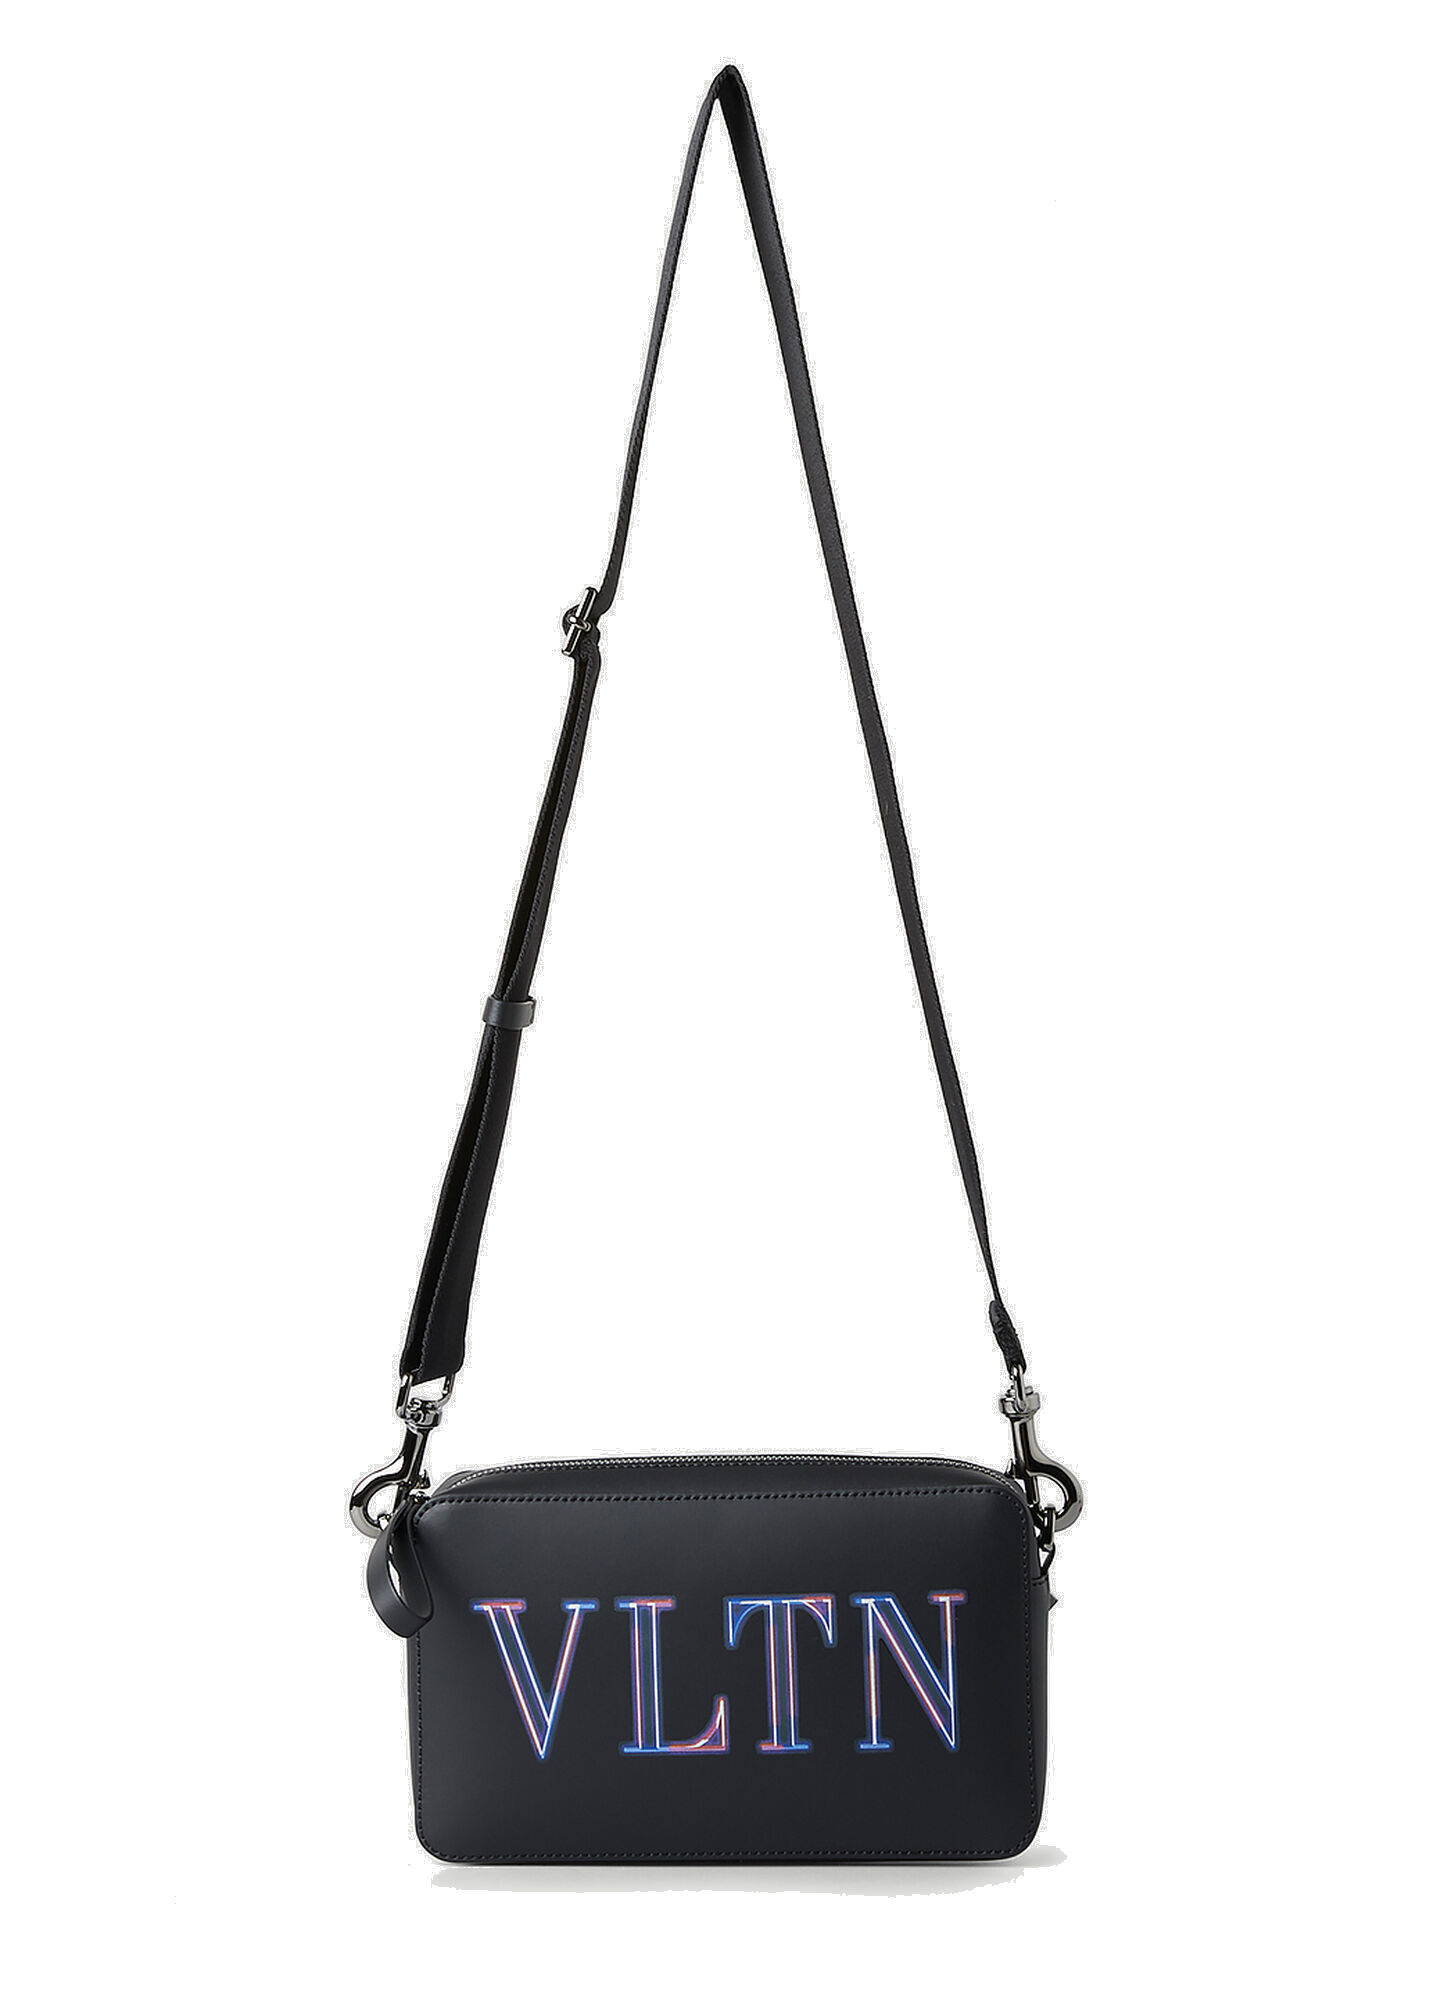 Photo: Neon VLTN Crossbody Bag in Black